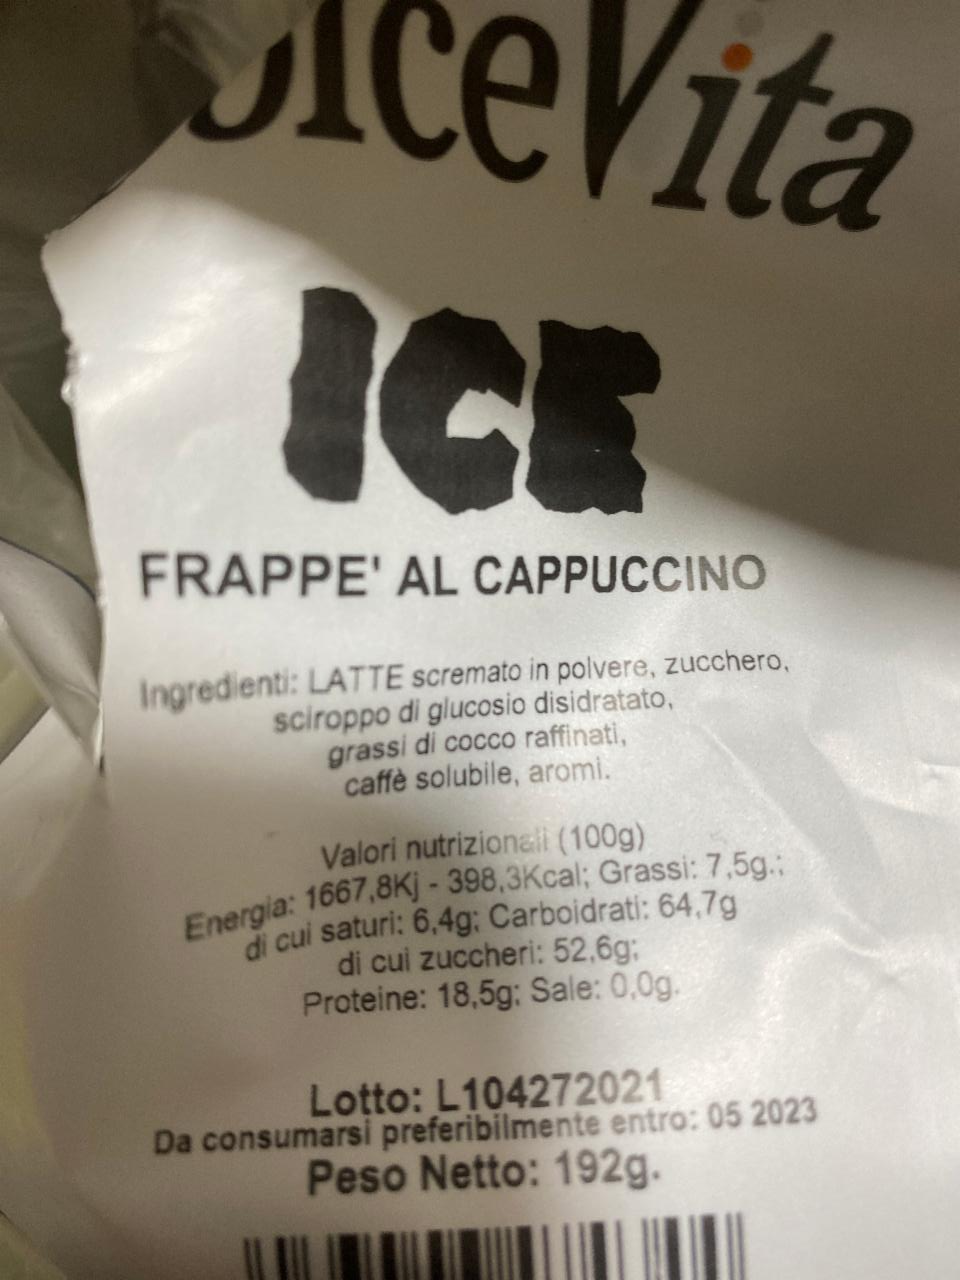 Fotografie - DolceVota ICE frappe' al cappuccino